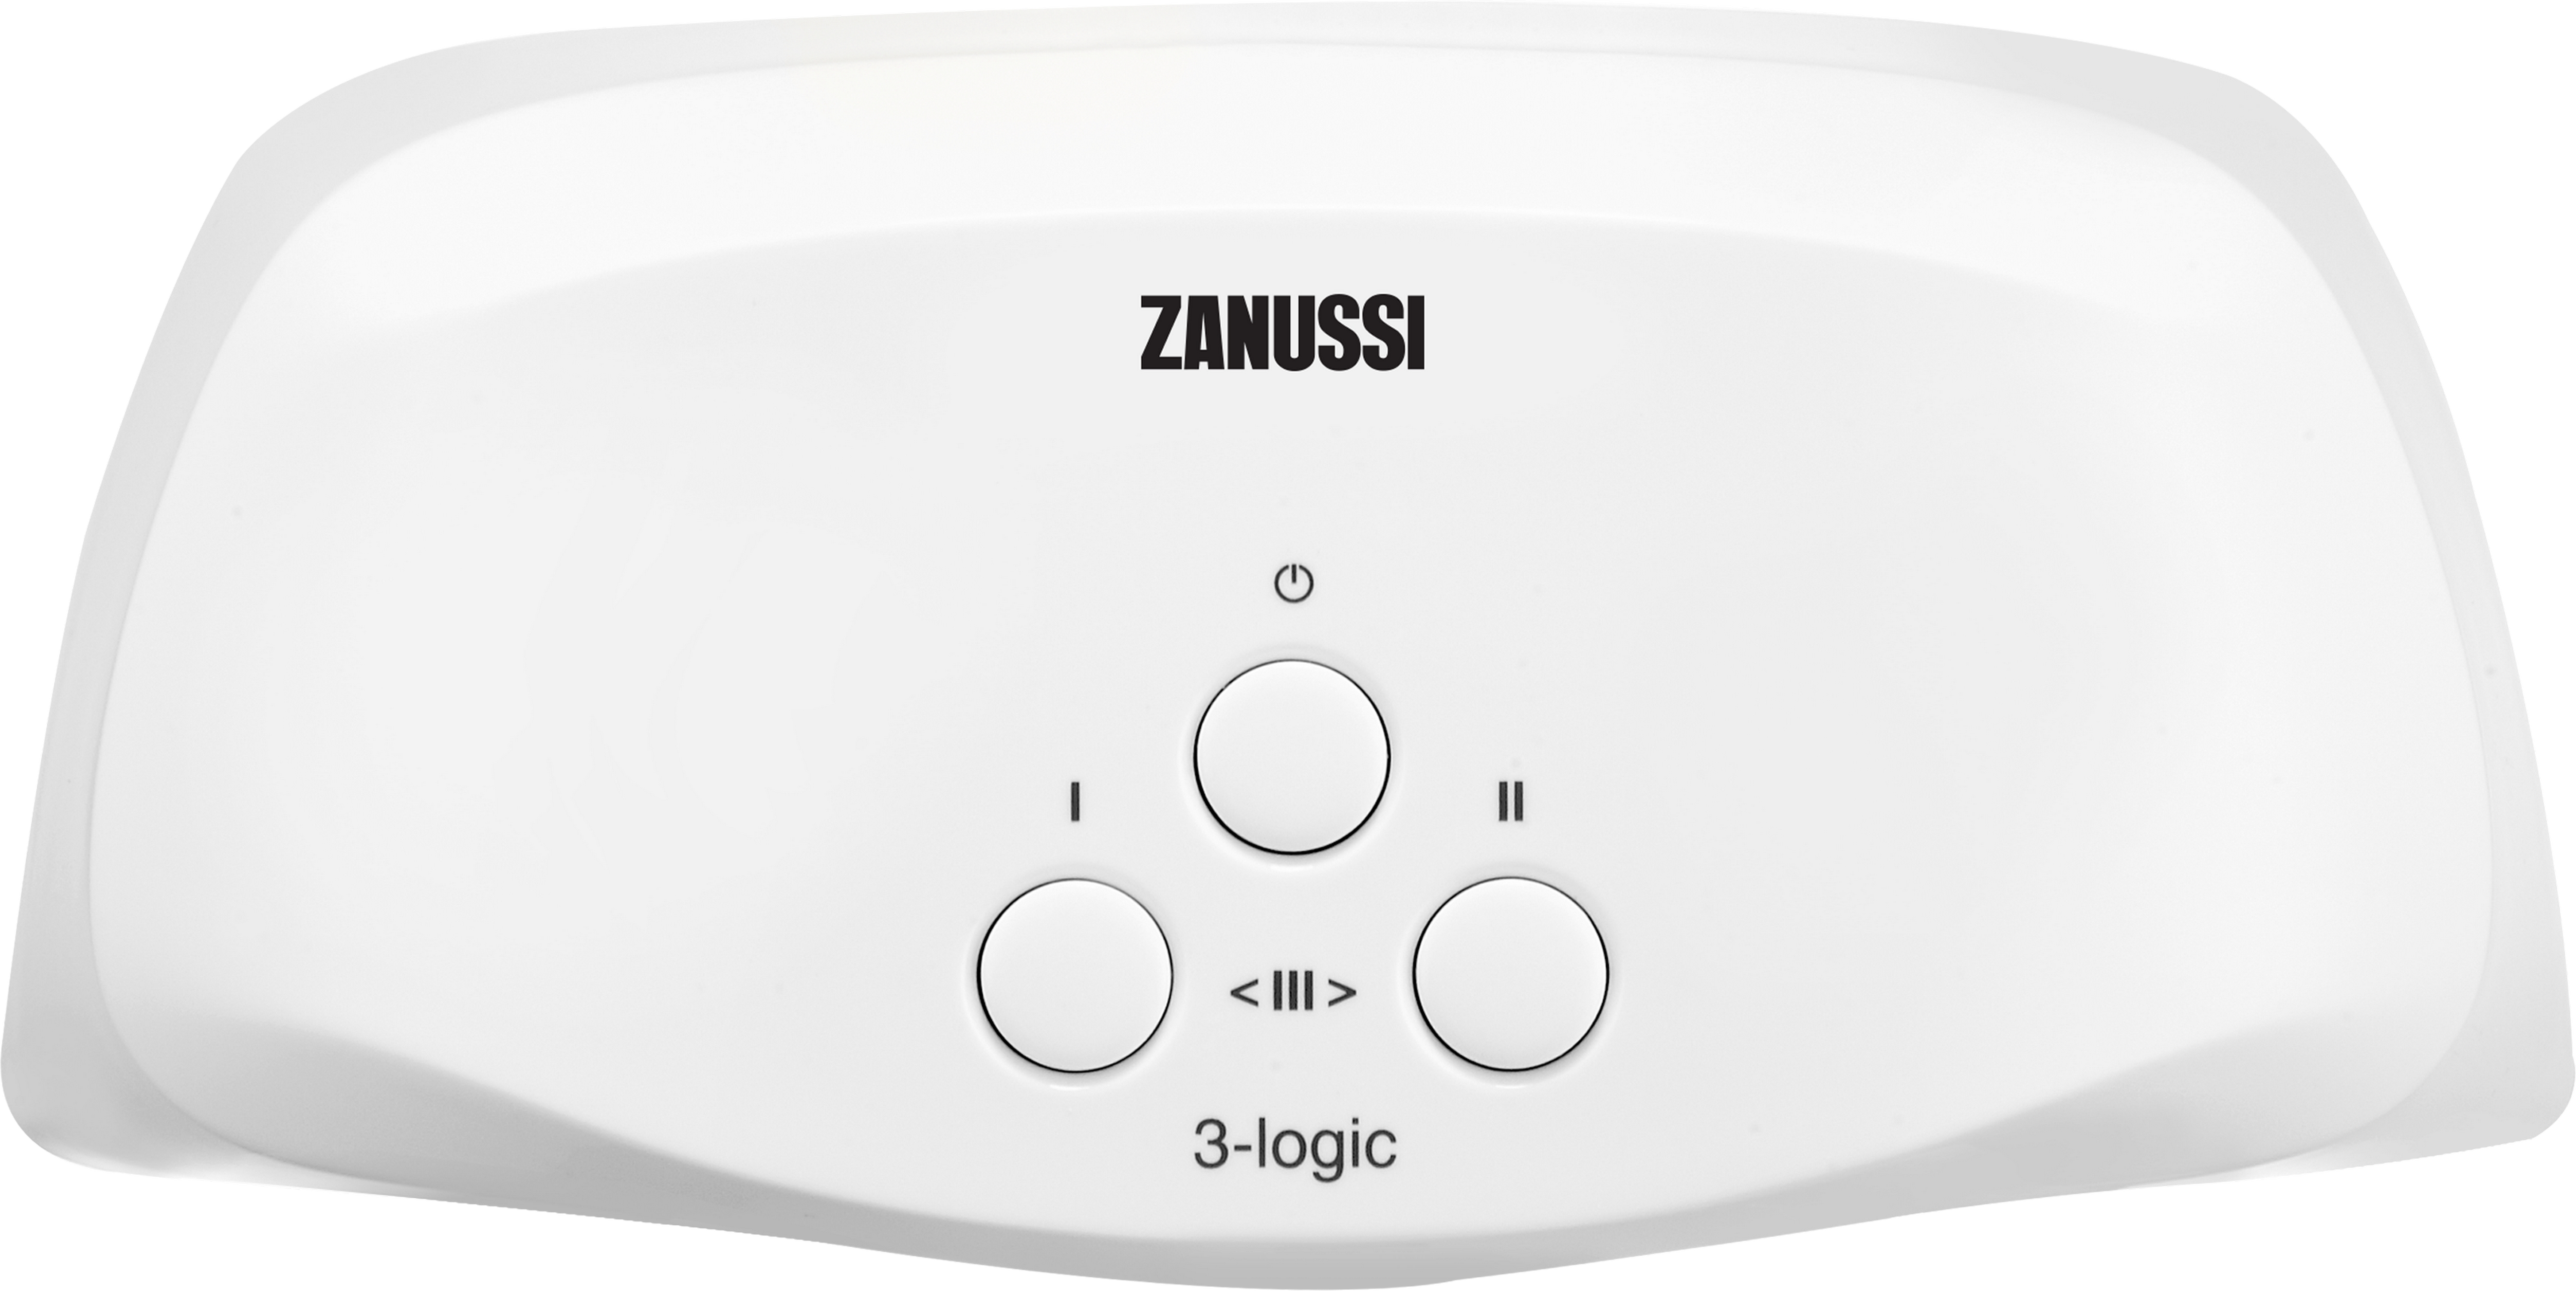 Купить кран zanussi водонагреватель Zanussi 3-logic TS (6,5 кВт) в Киеве